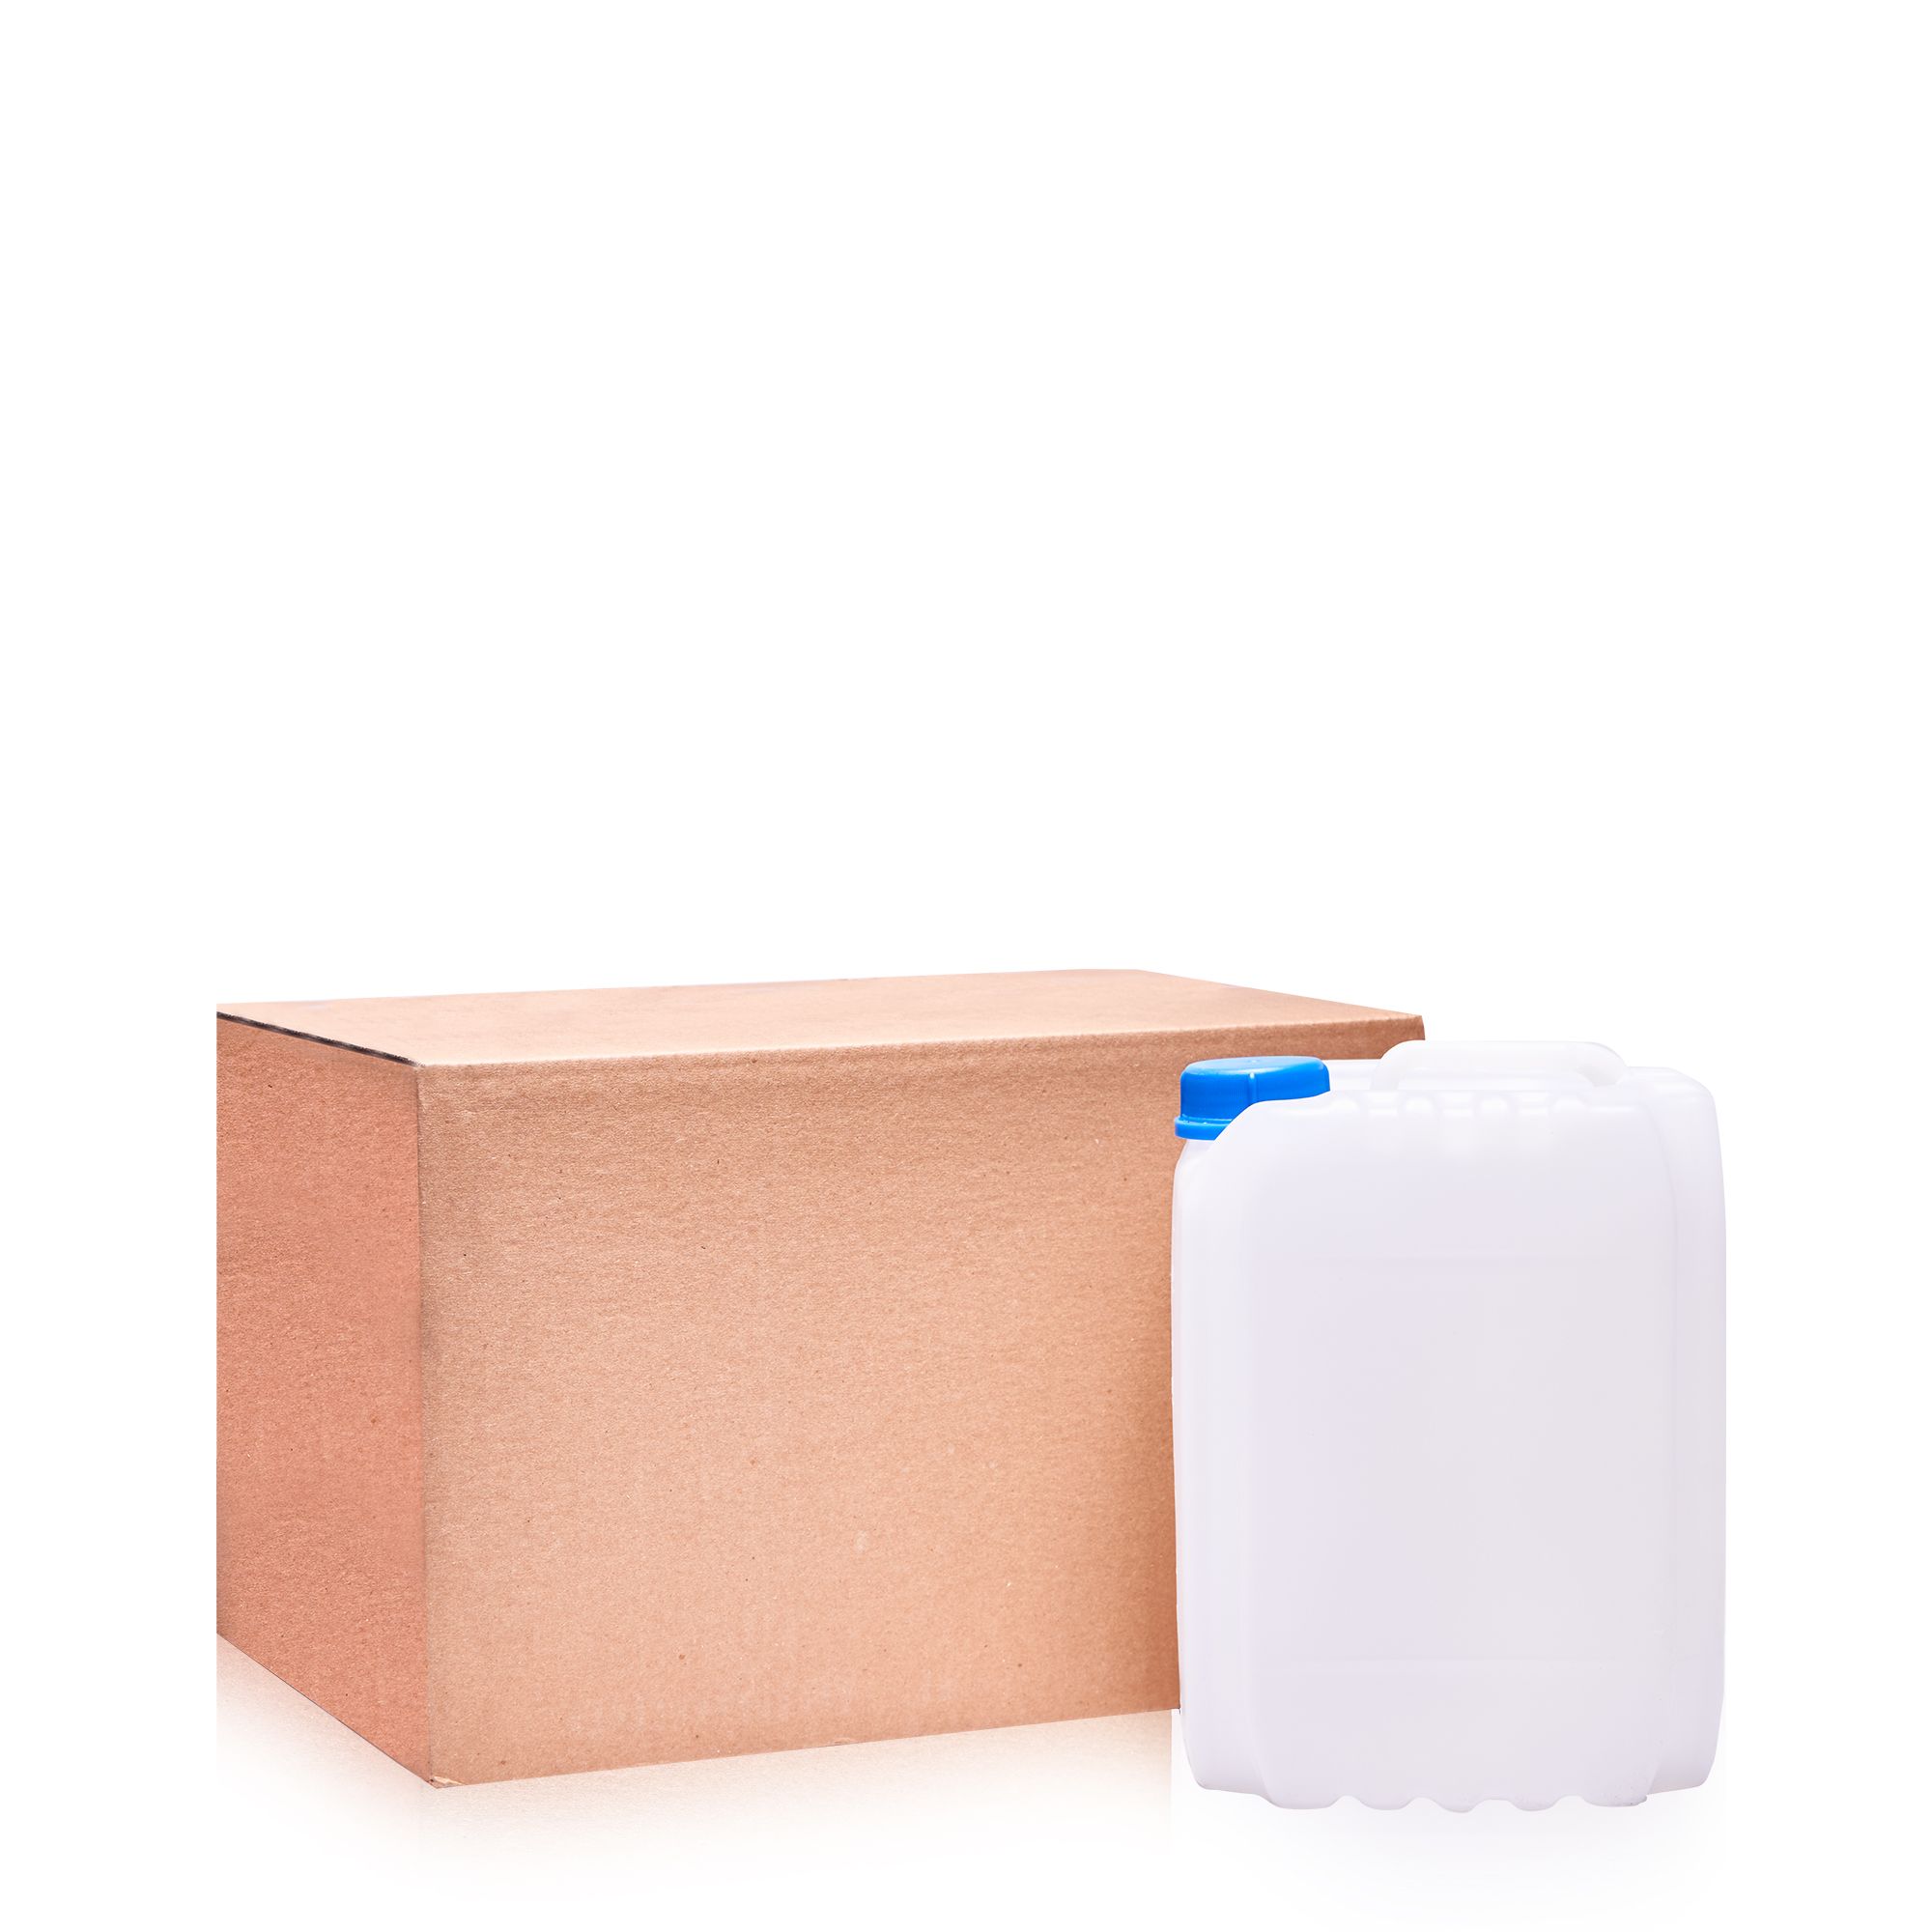 Растворитель Bi-Solv 1203 — канистра с картонной коробкой